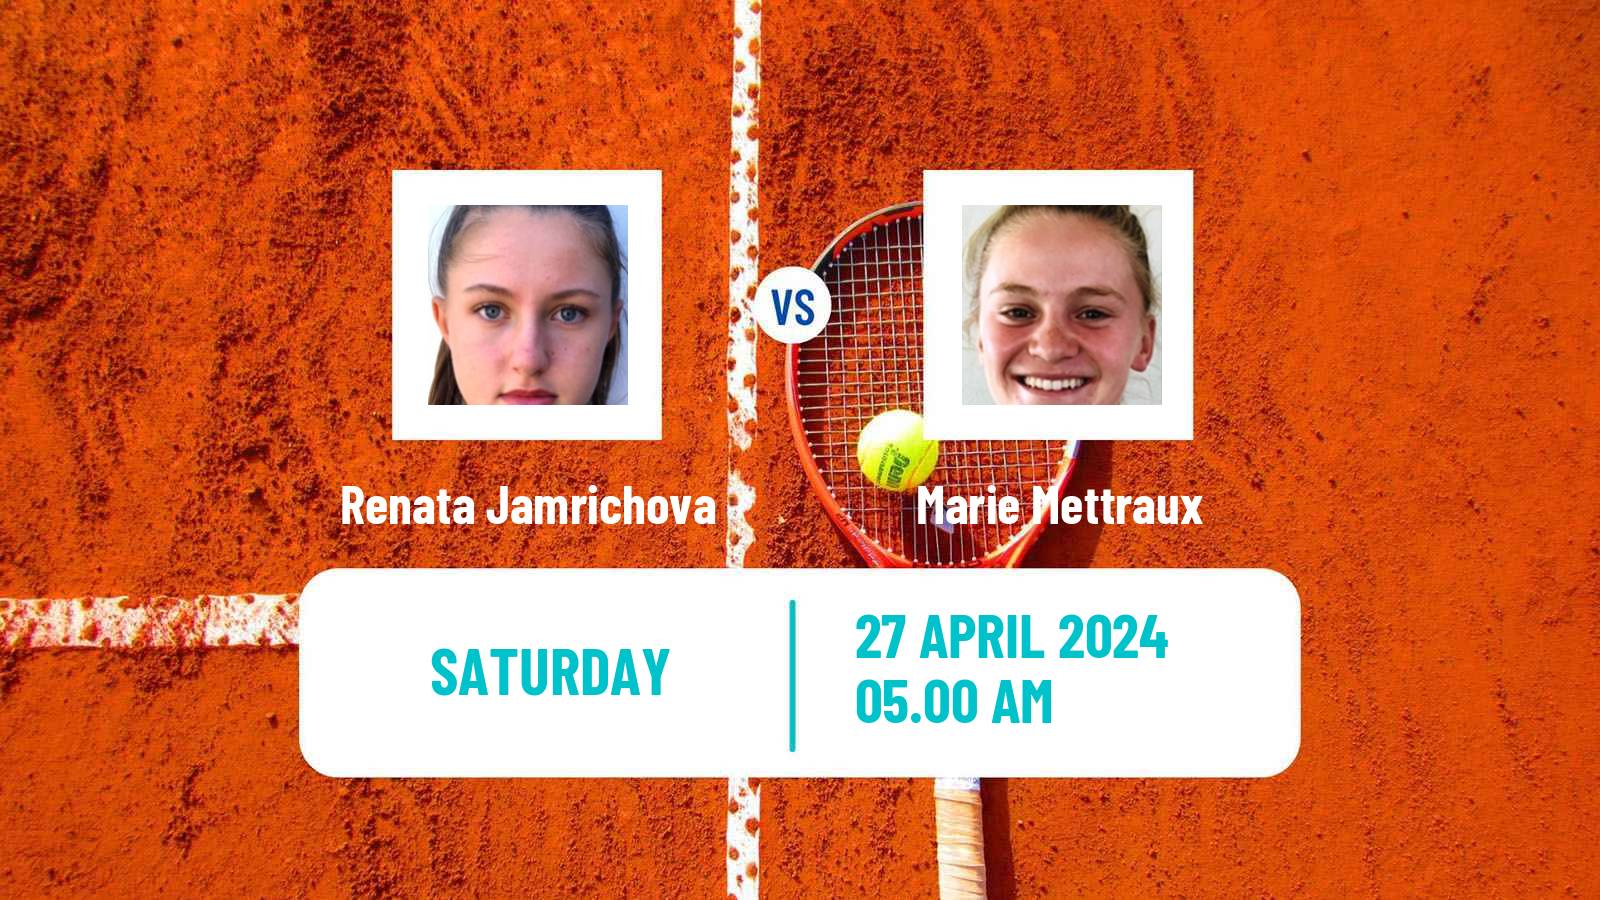 Tennis ITF W15 Telde 4 Women Renata Jamrichova - Marie Mettraux